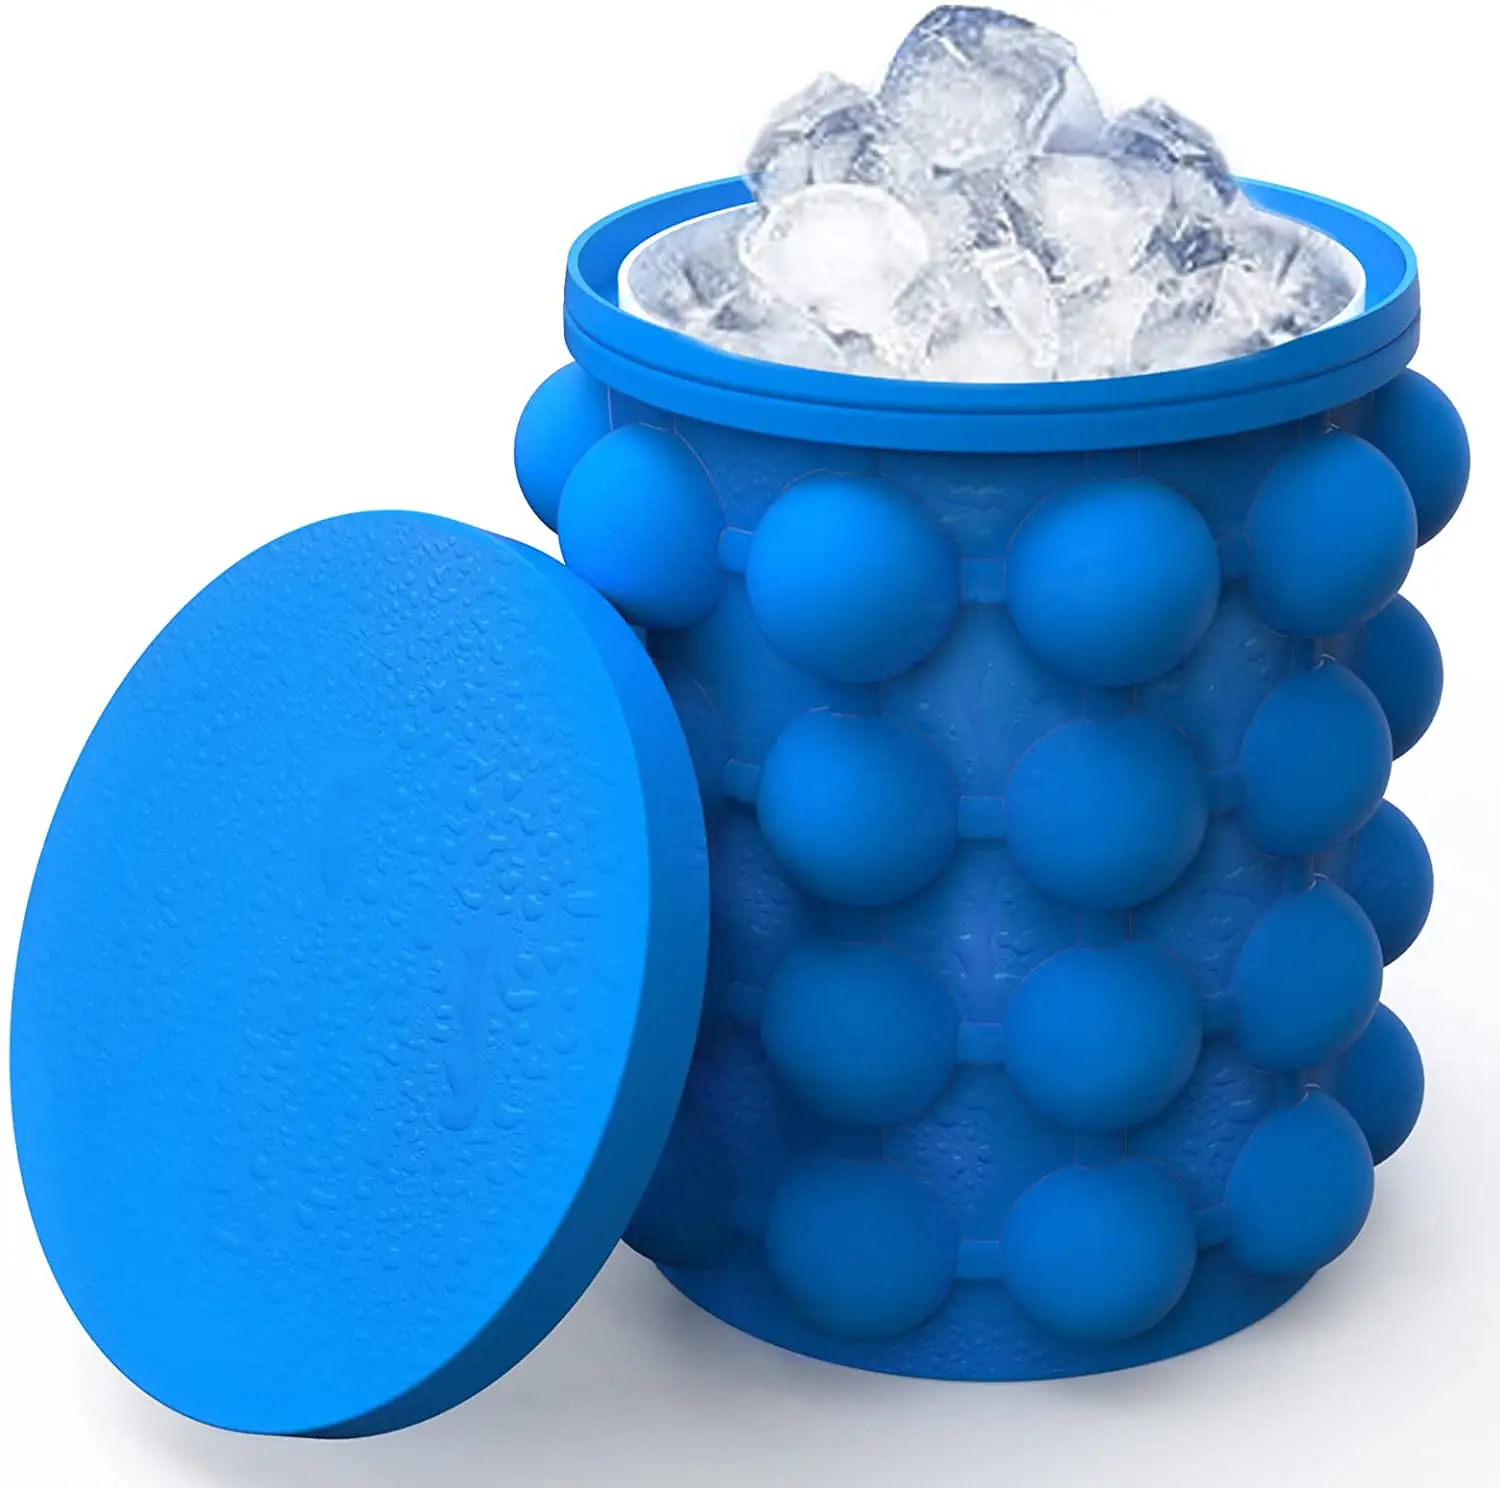 YUOU Hot Selling Tragbarer Abstand Speichern Eiswürfel schale Hochwertiges neues Design Silikon Eiswürfel bereiter Genie Eiswürfel form